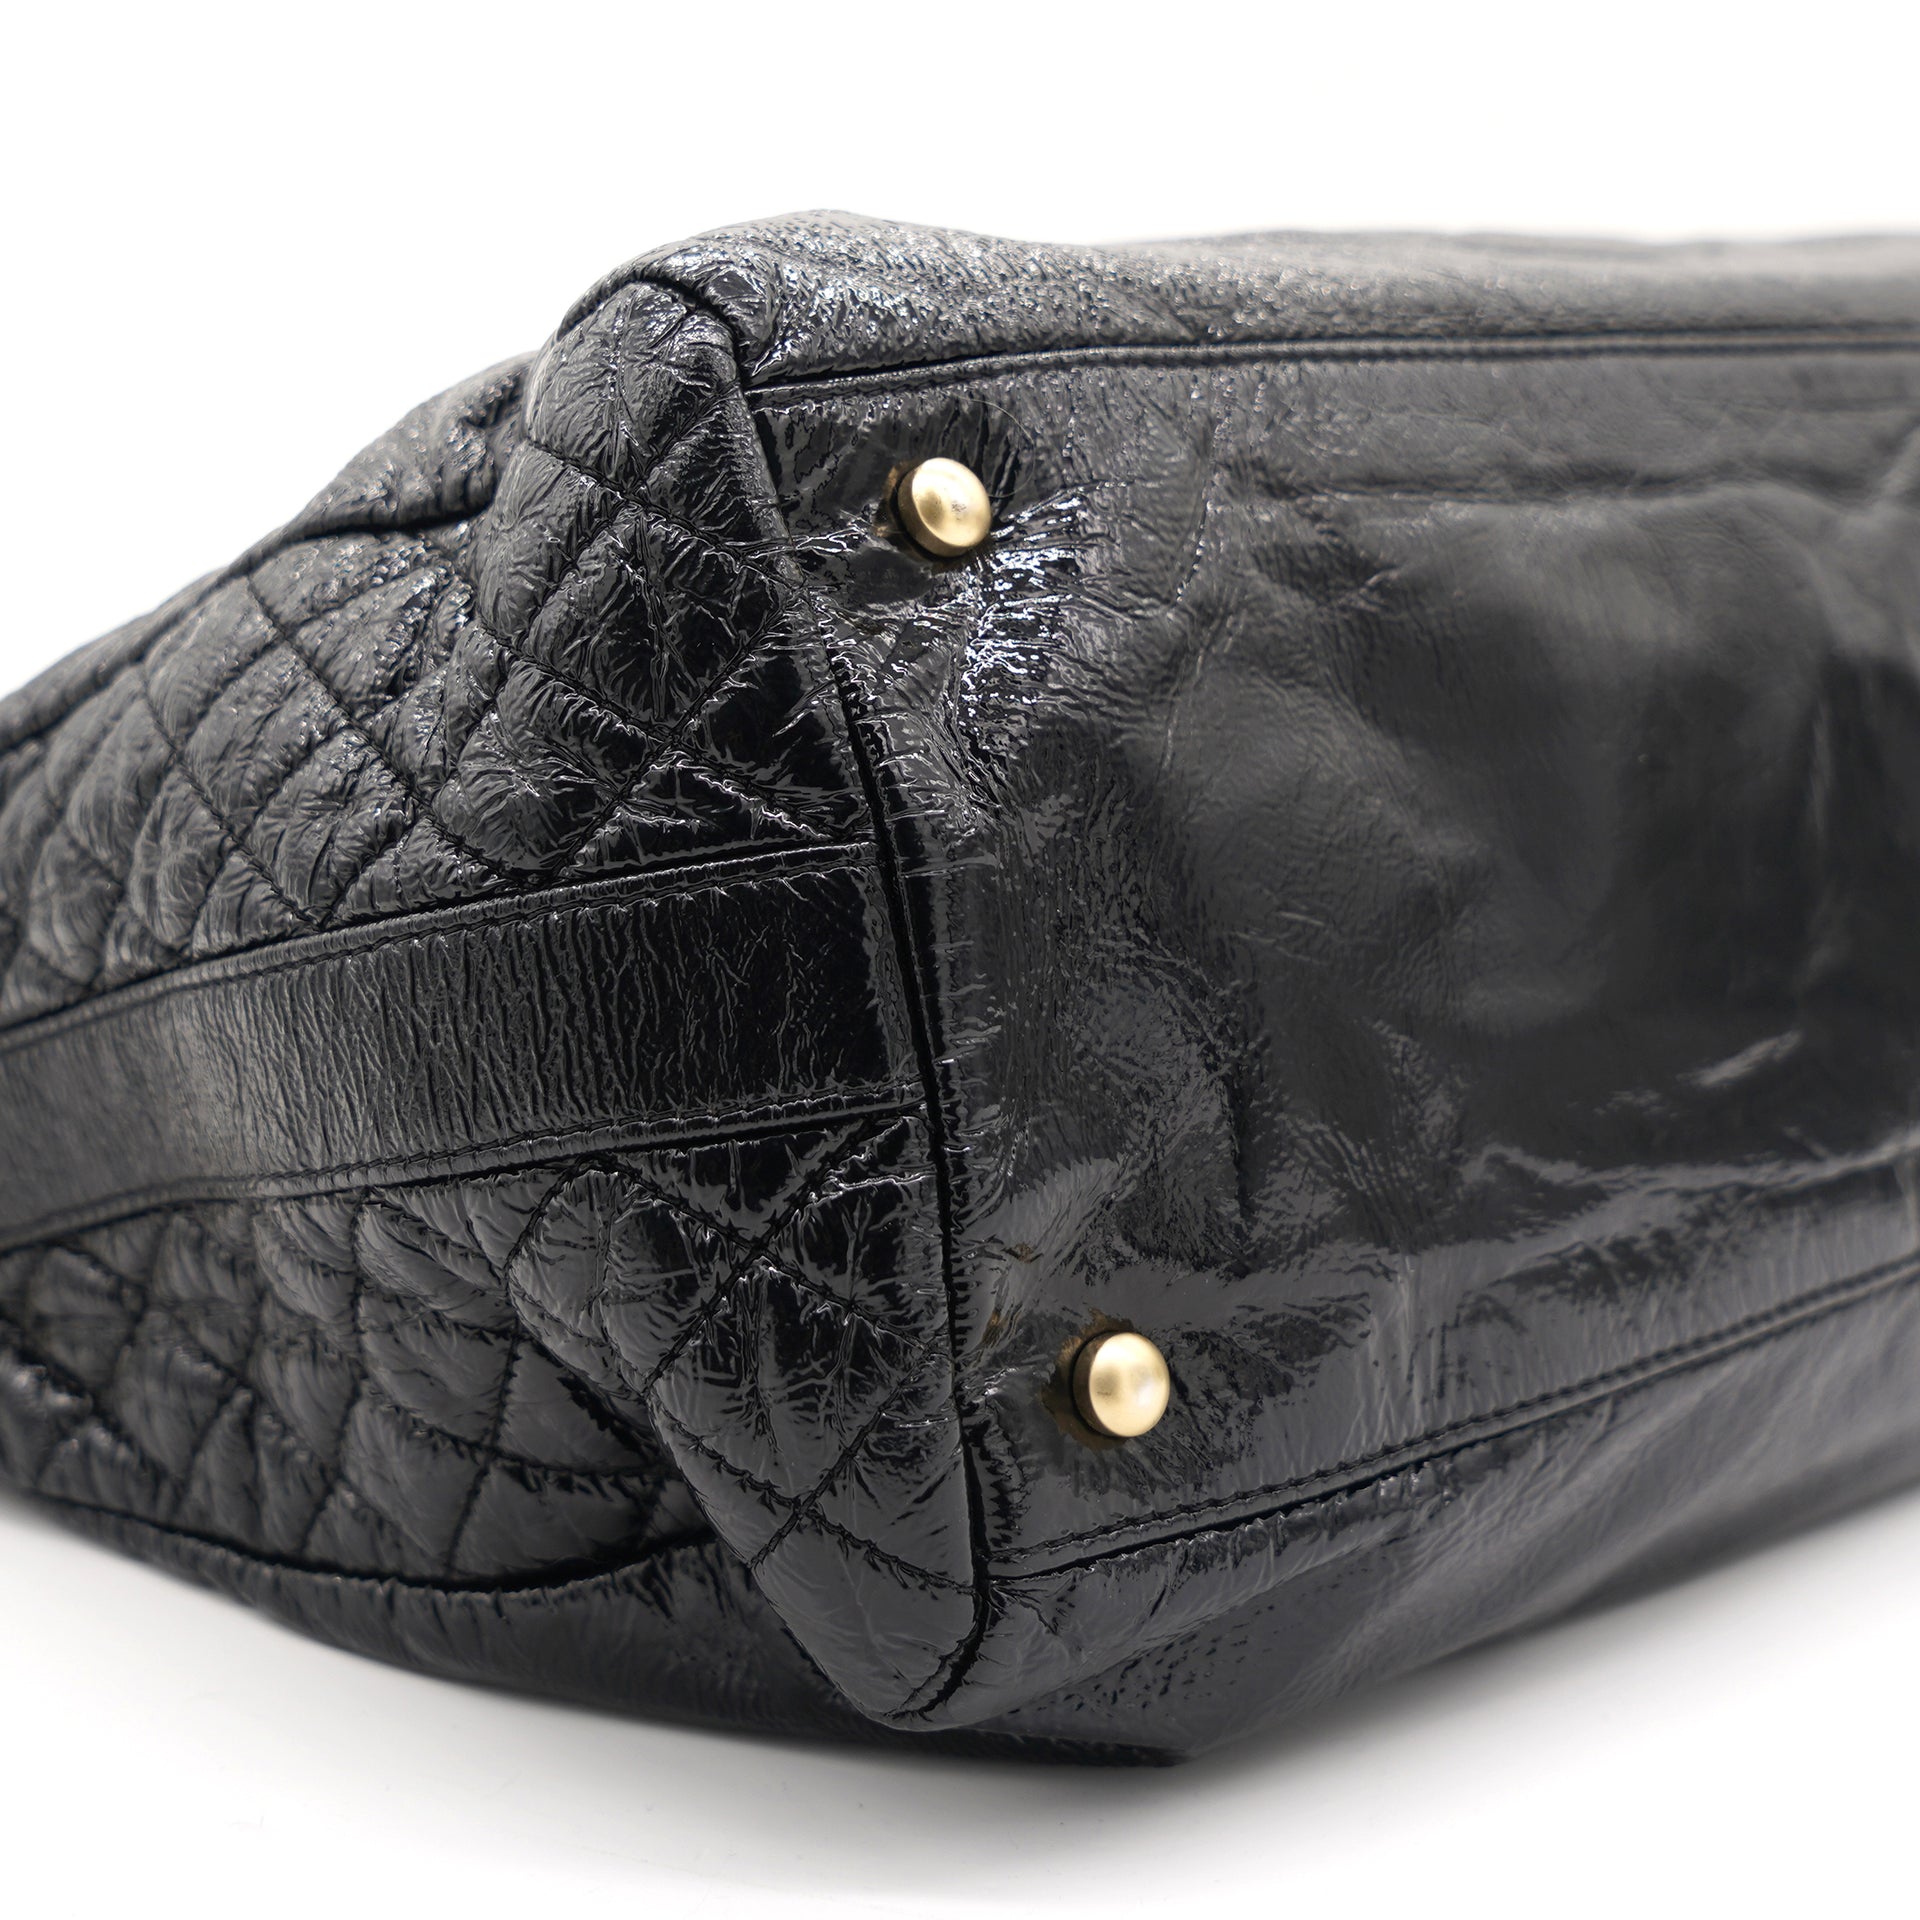 Patent Medium Rock and Chain Bowler Bag Black